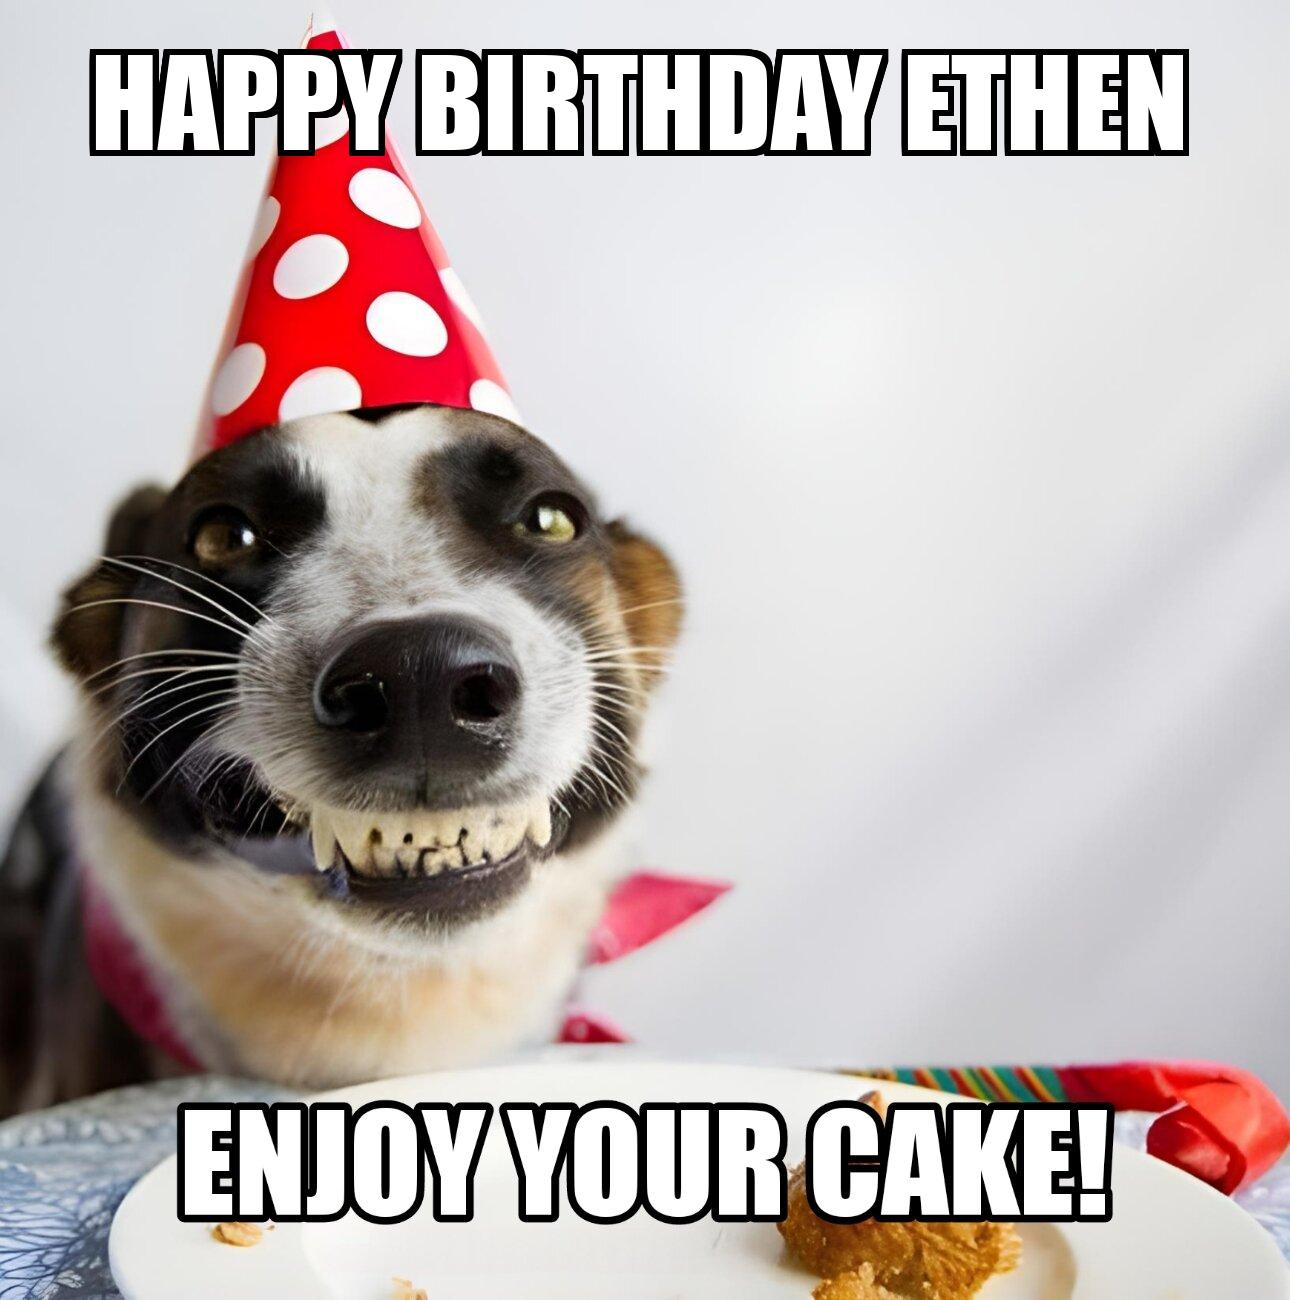 Happy Birthday Ethen Enjoy Your Cake Dog Meme